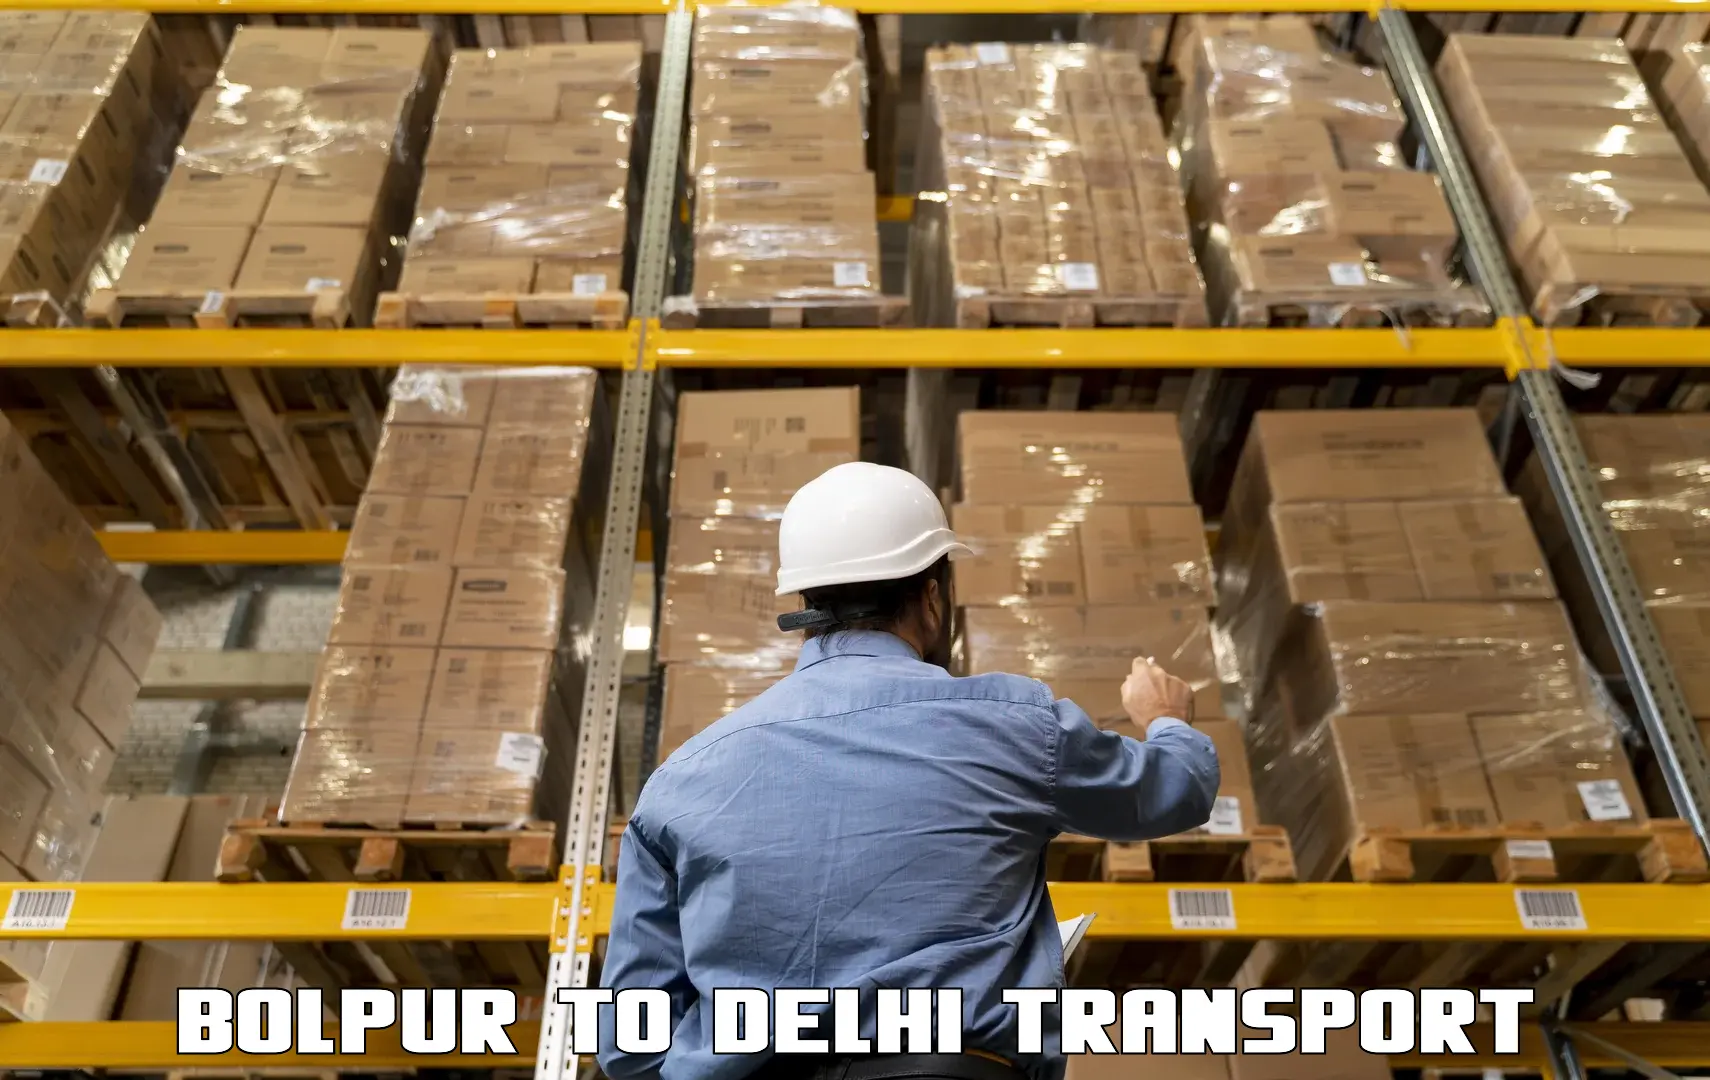 Online transport service Bolpur to IIT Delhi